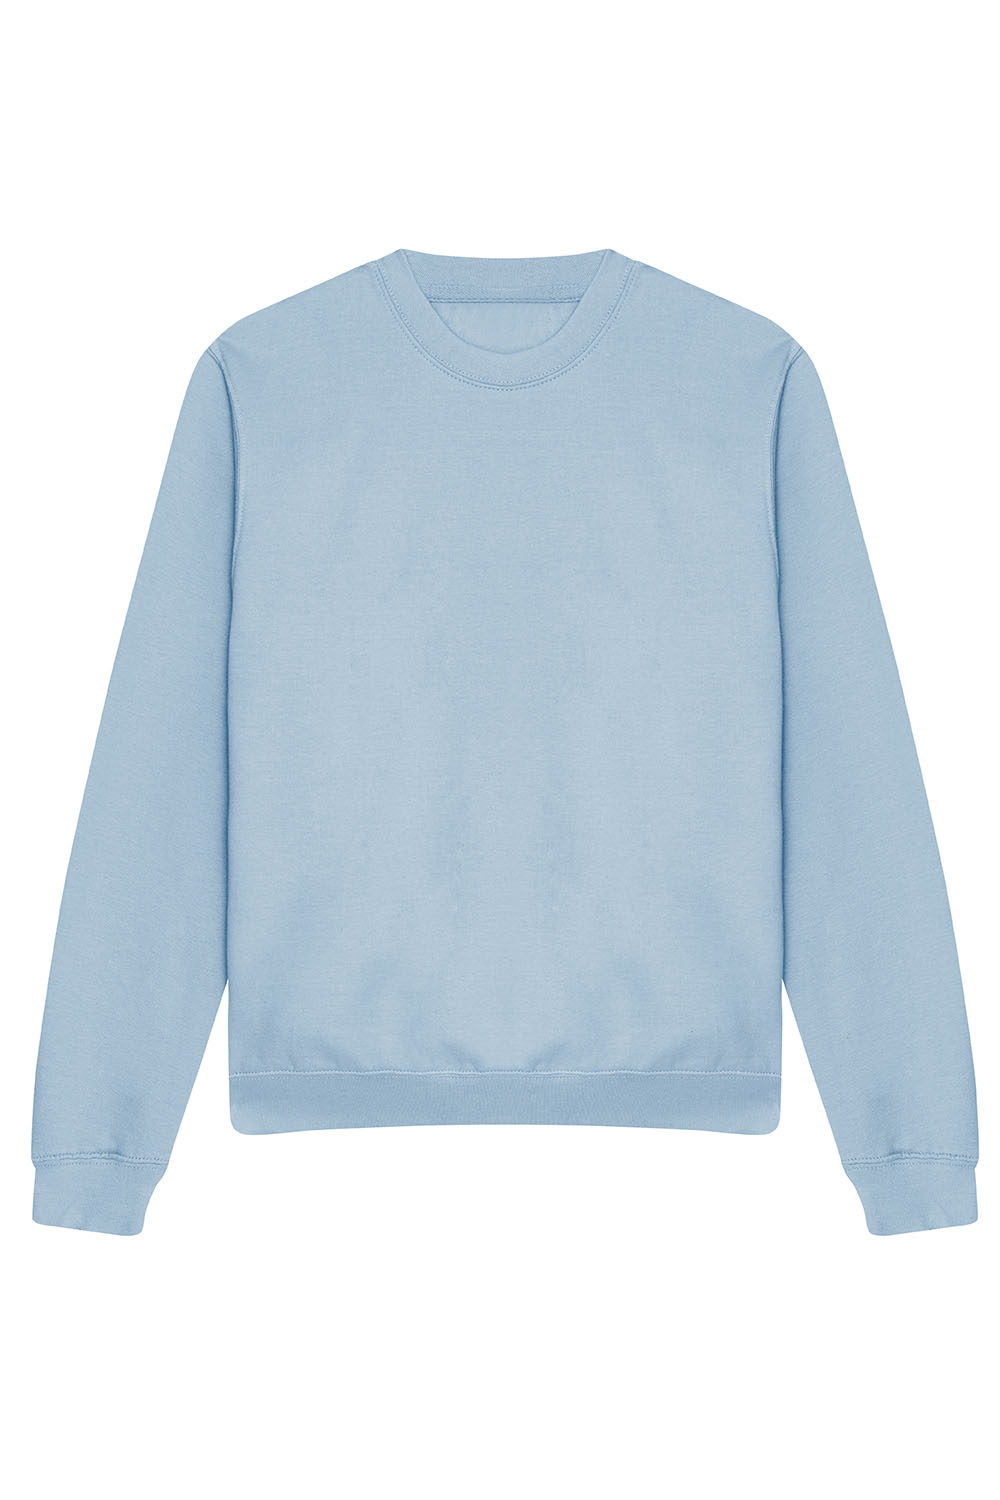 Unisex Crewneck Custom Printed Sweatshirt